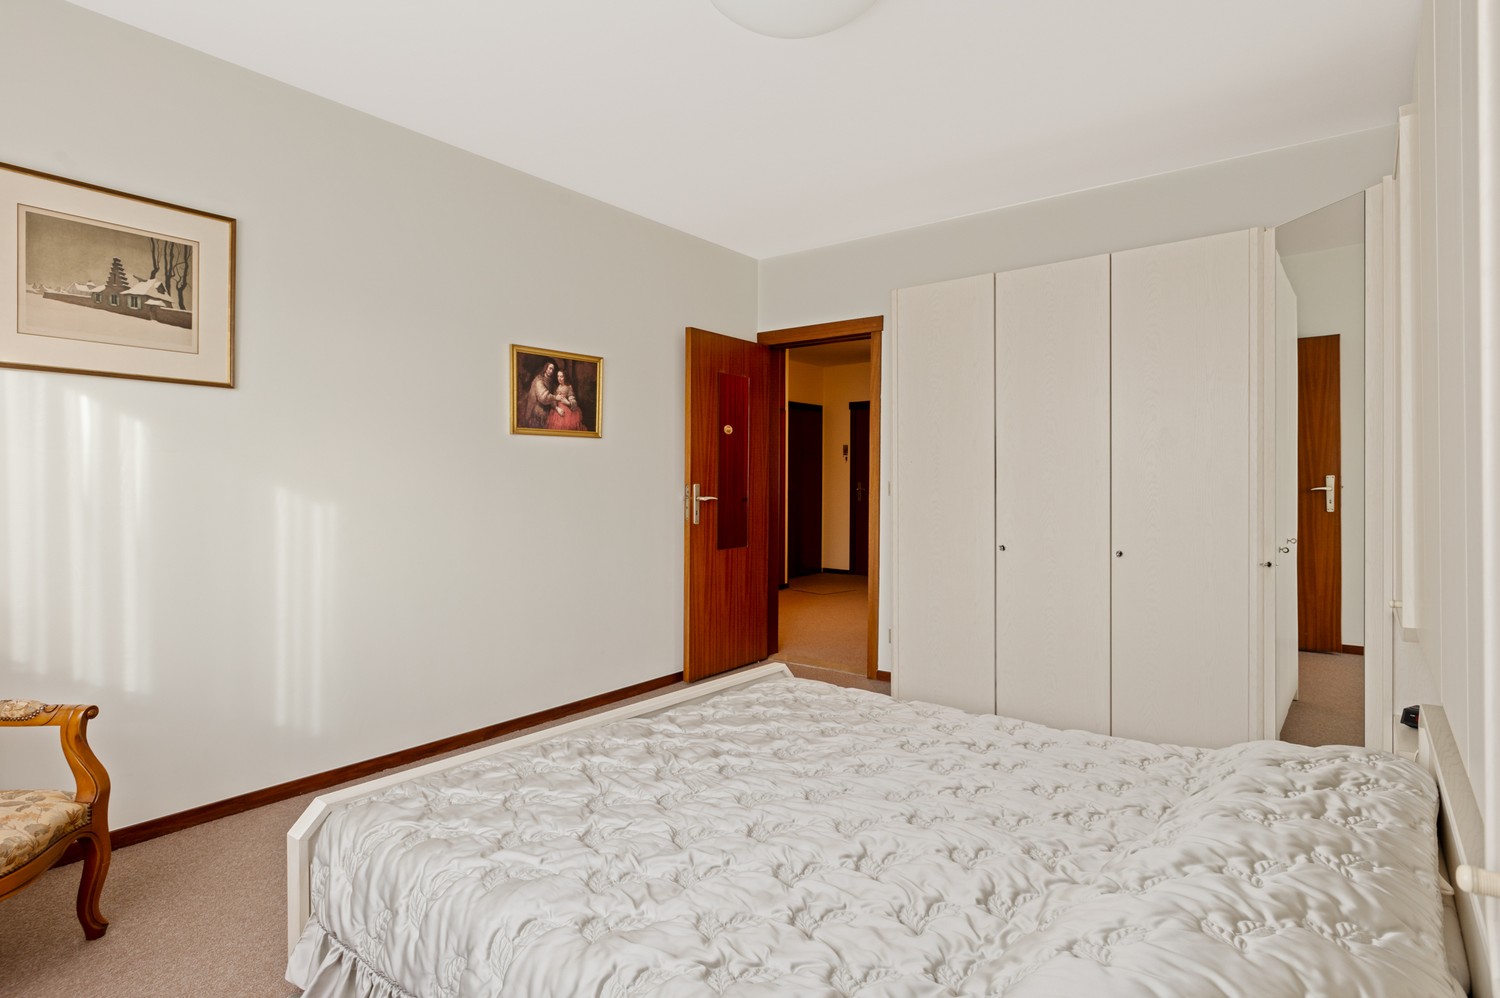 Appartement met drie slaapkamers, prachtig terras op gegeerde locatie in Deurne! afbeelding 14